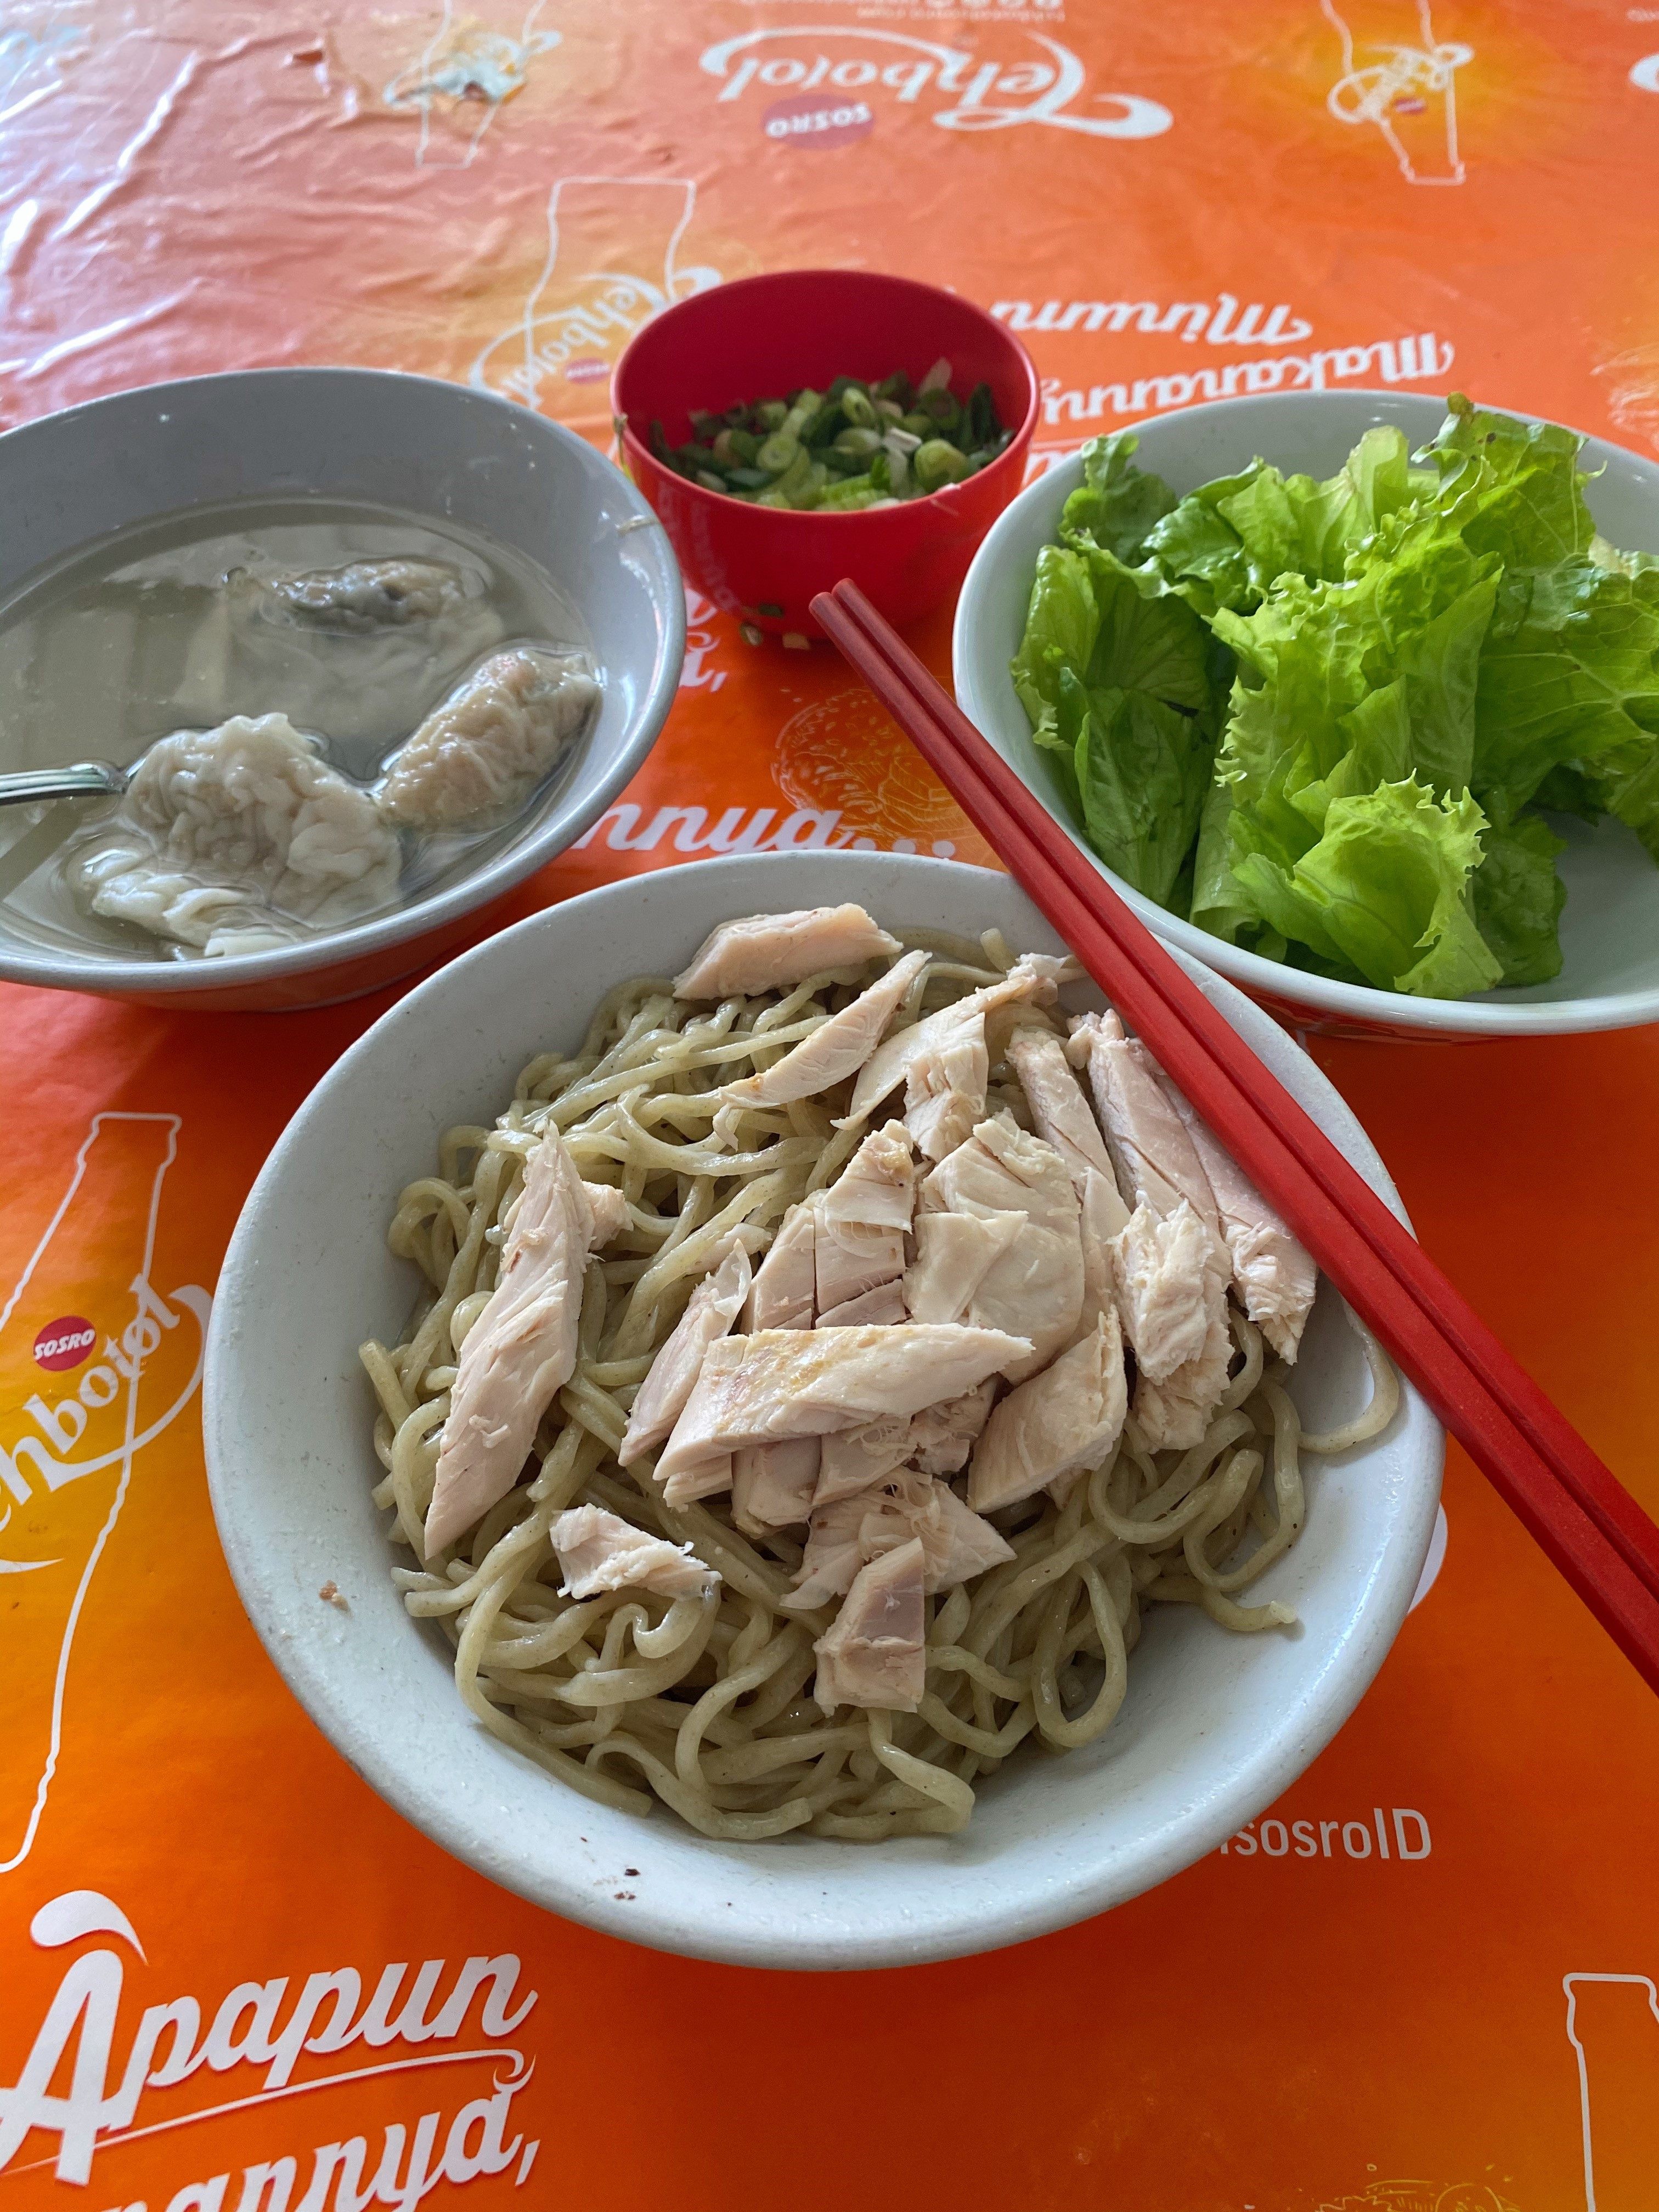 A bowl of chicken noodles at Bakmi Ayam Acang. Photo: Randy Mulyanto